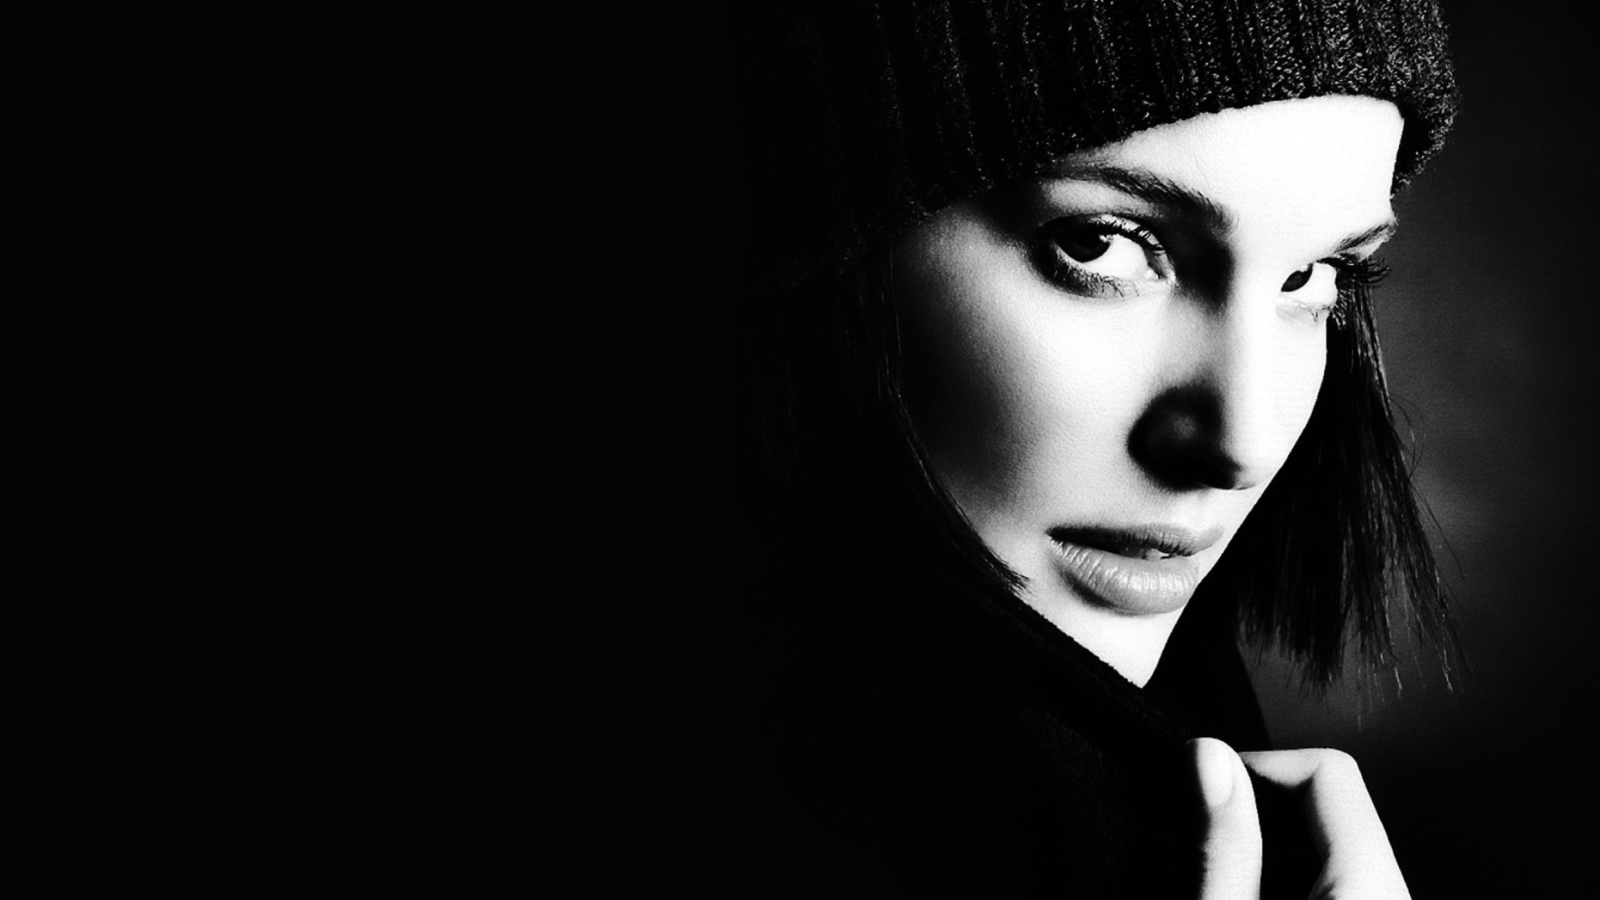 Sfondi Natalie Portman Black And White 1600x900